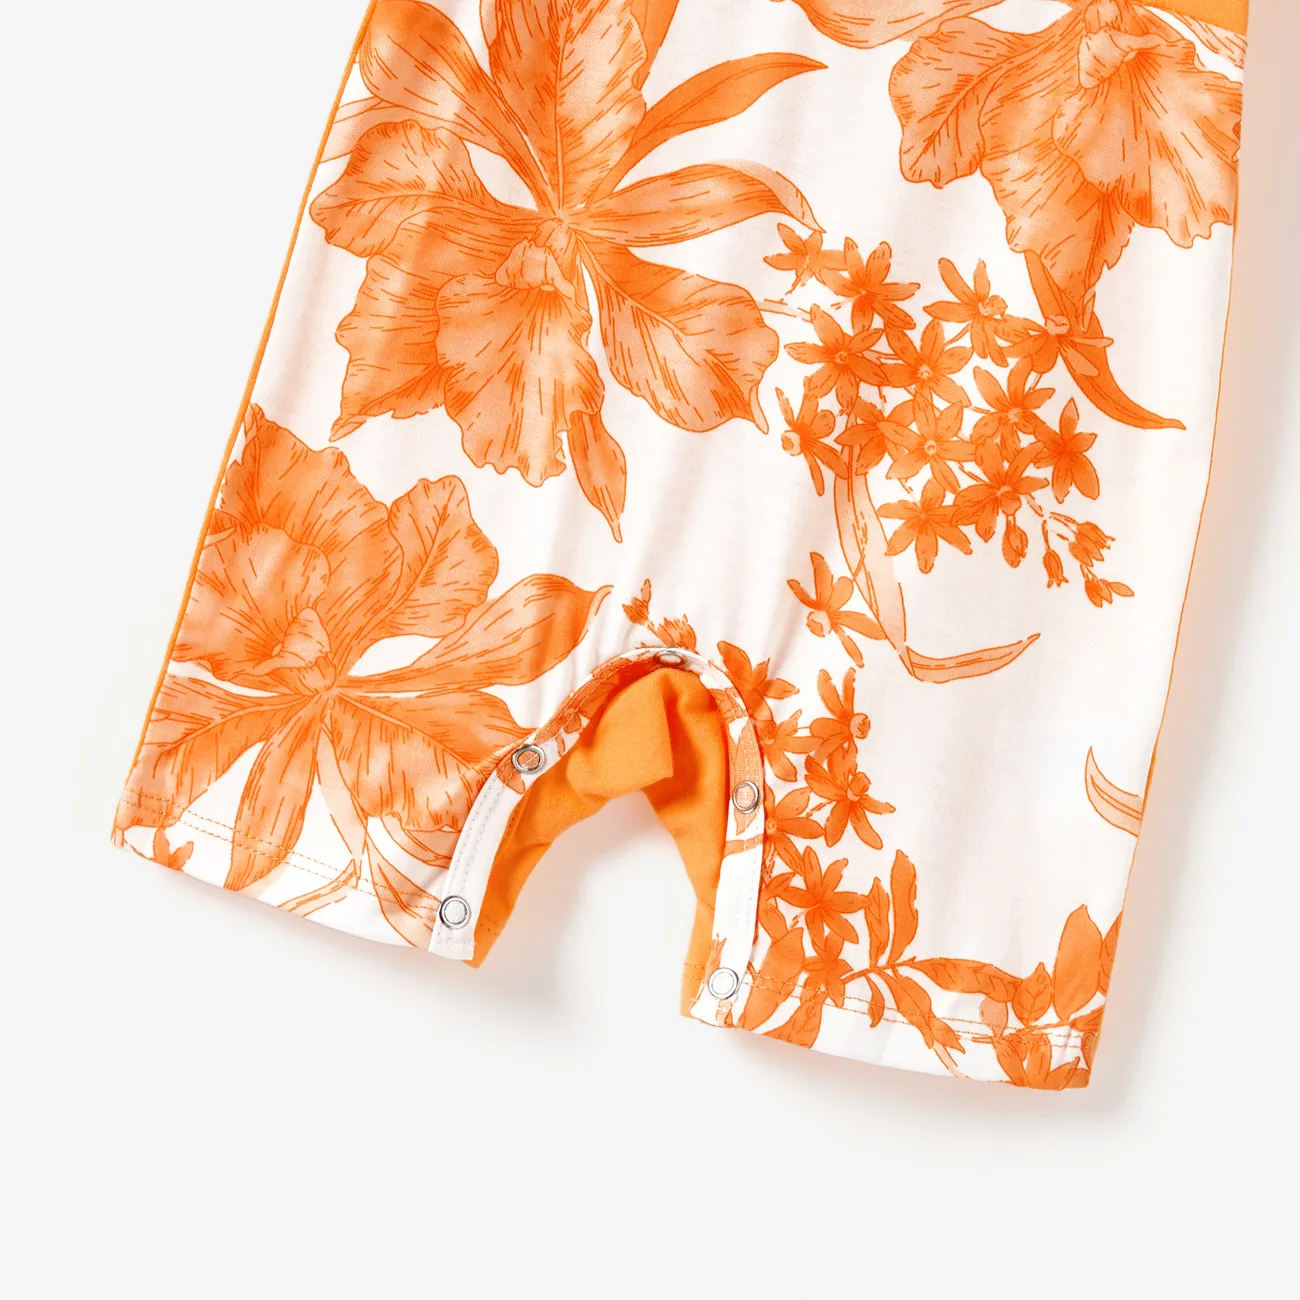 全家裝 熱帶植物花卉 背心 親子裝 套裝 橙色 big image 1